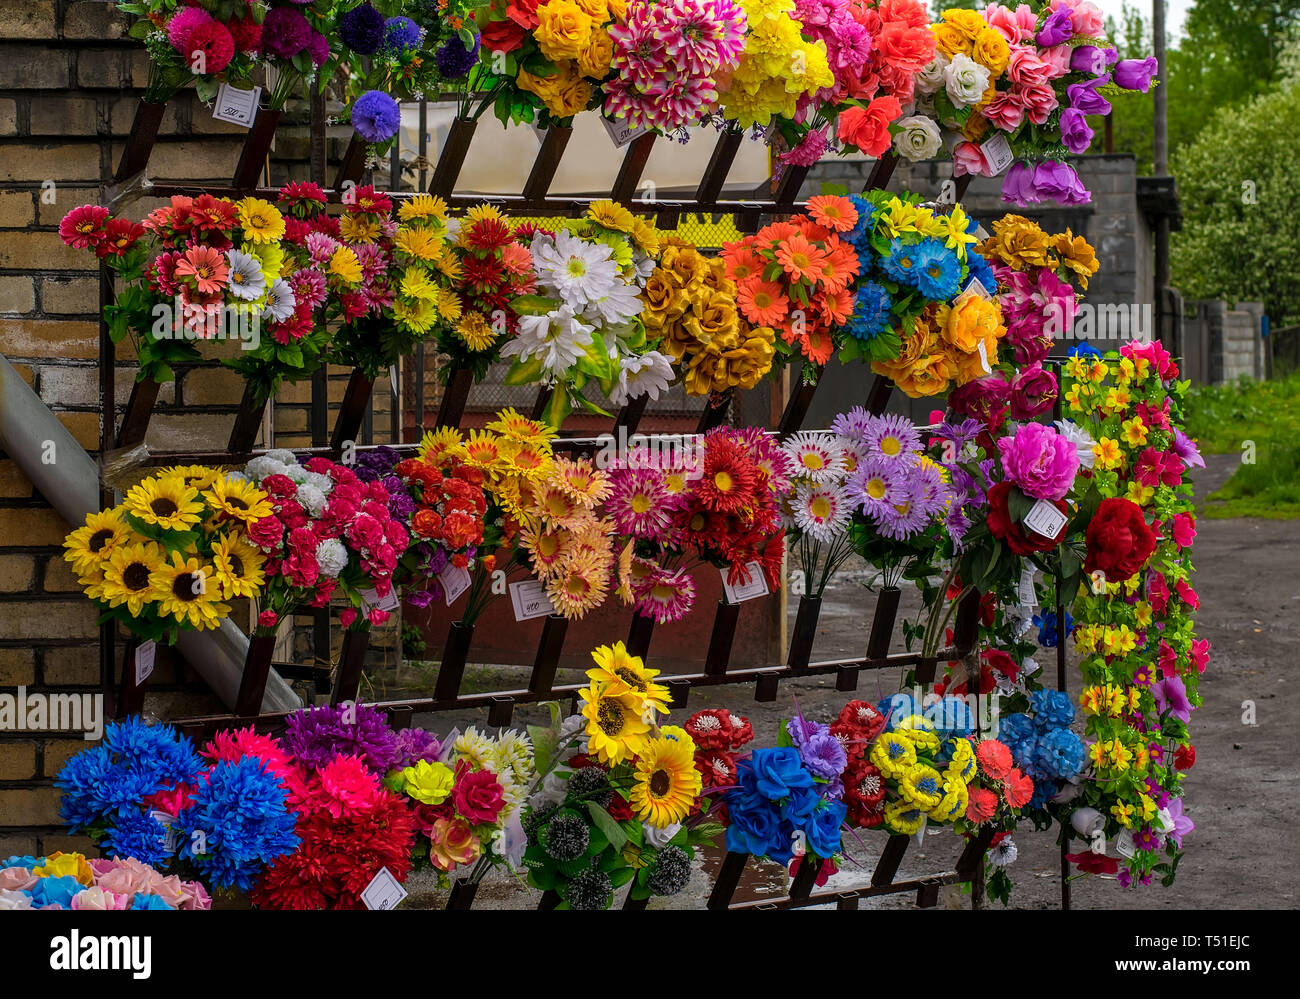 Vitrine pour la vente de bouquets de fleurs dans la rue, temps nuageux Banque D'Images